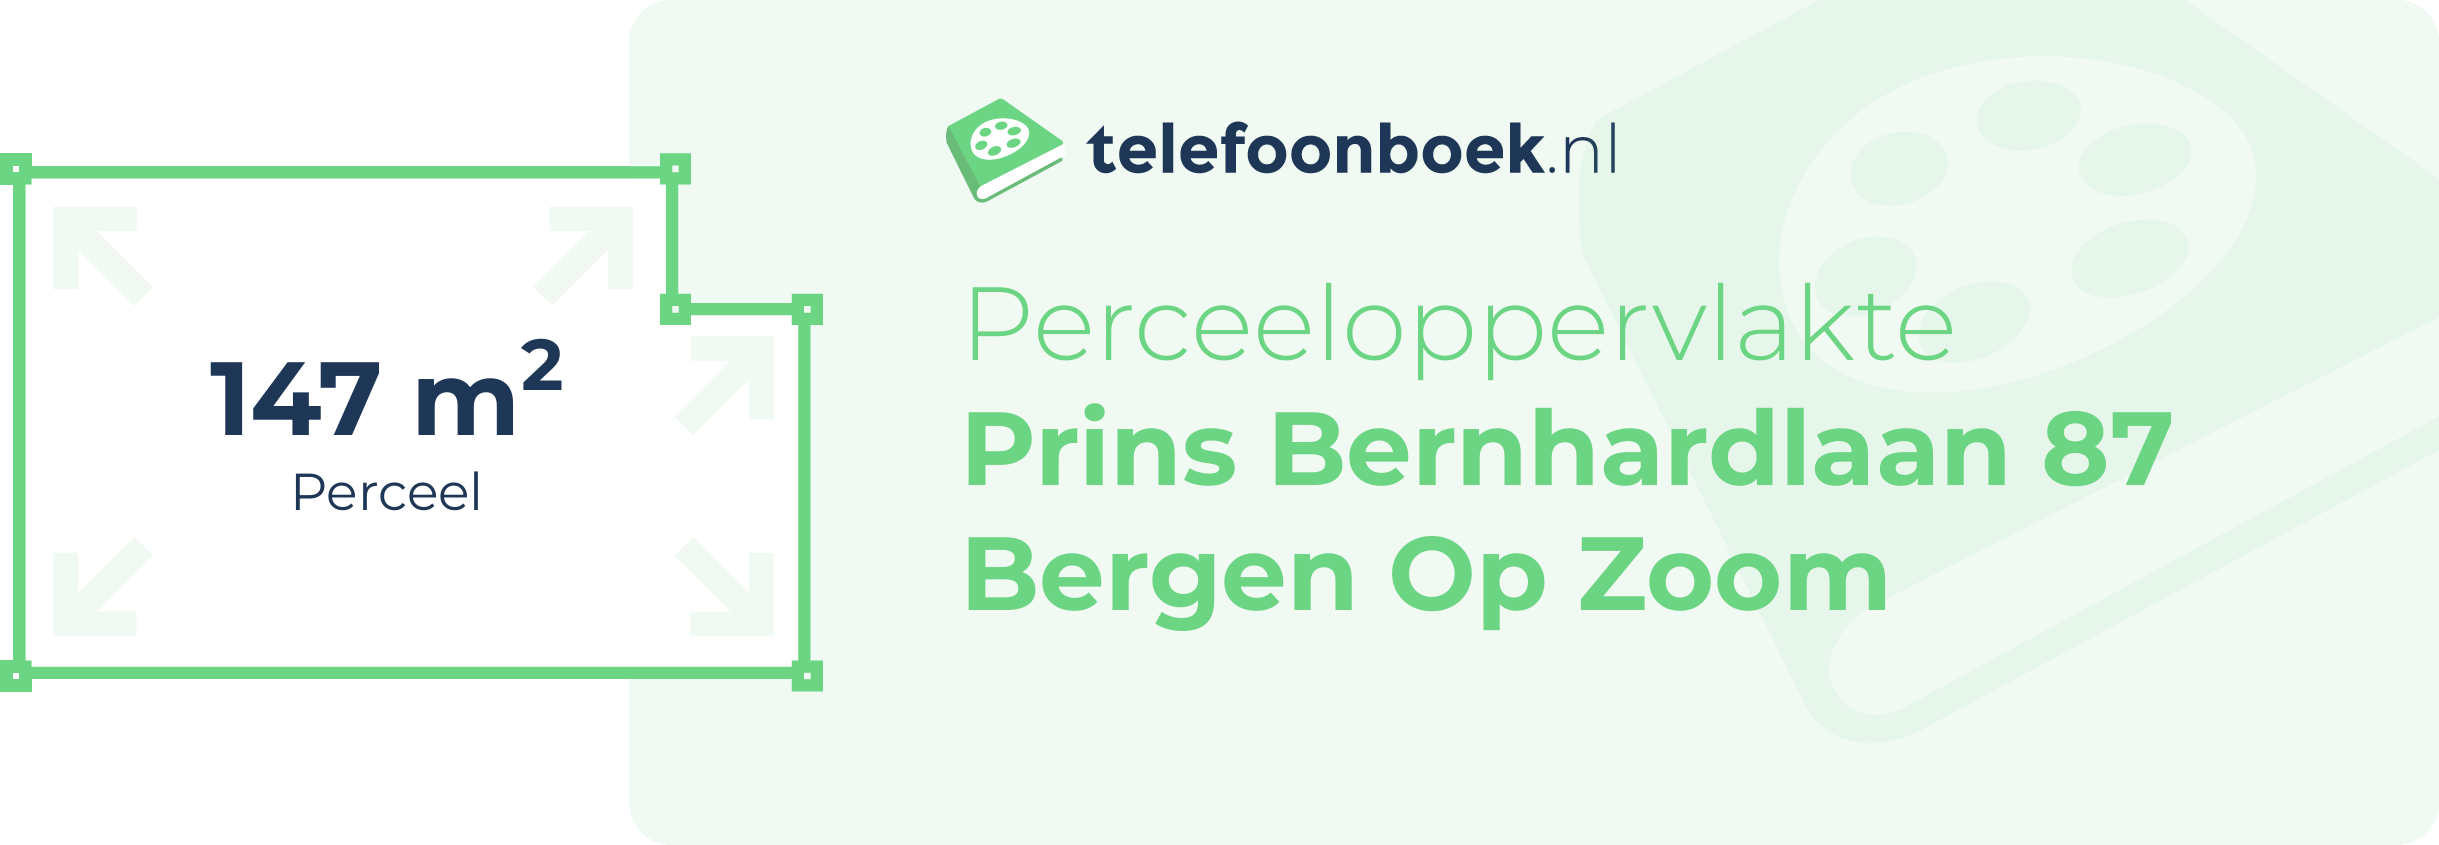 Perceeloppervlakte Prins Bernhardlaan 87 Bergen Op Zoom